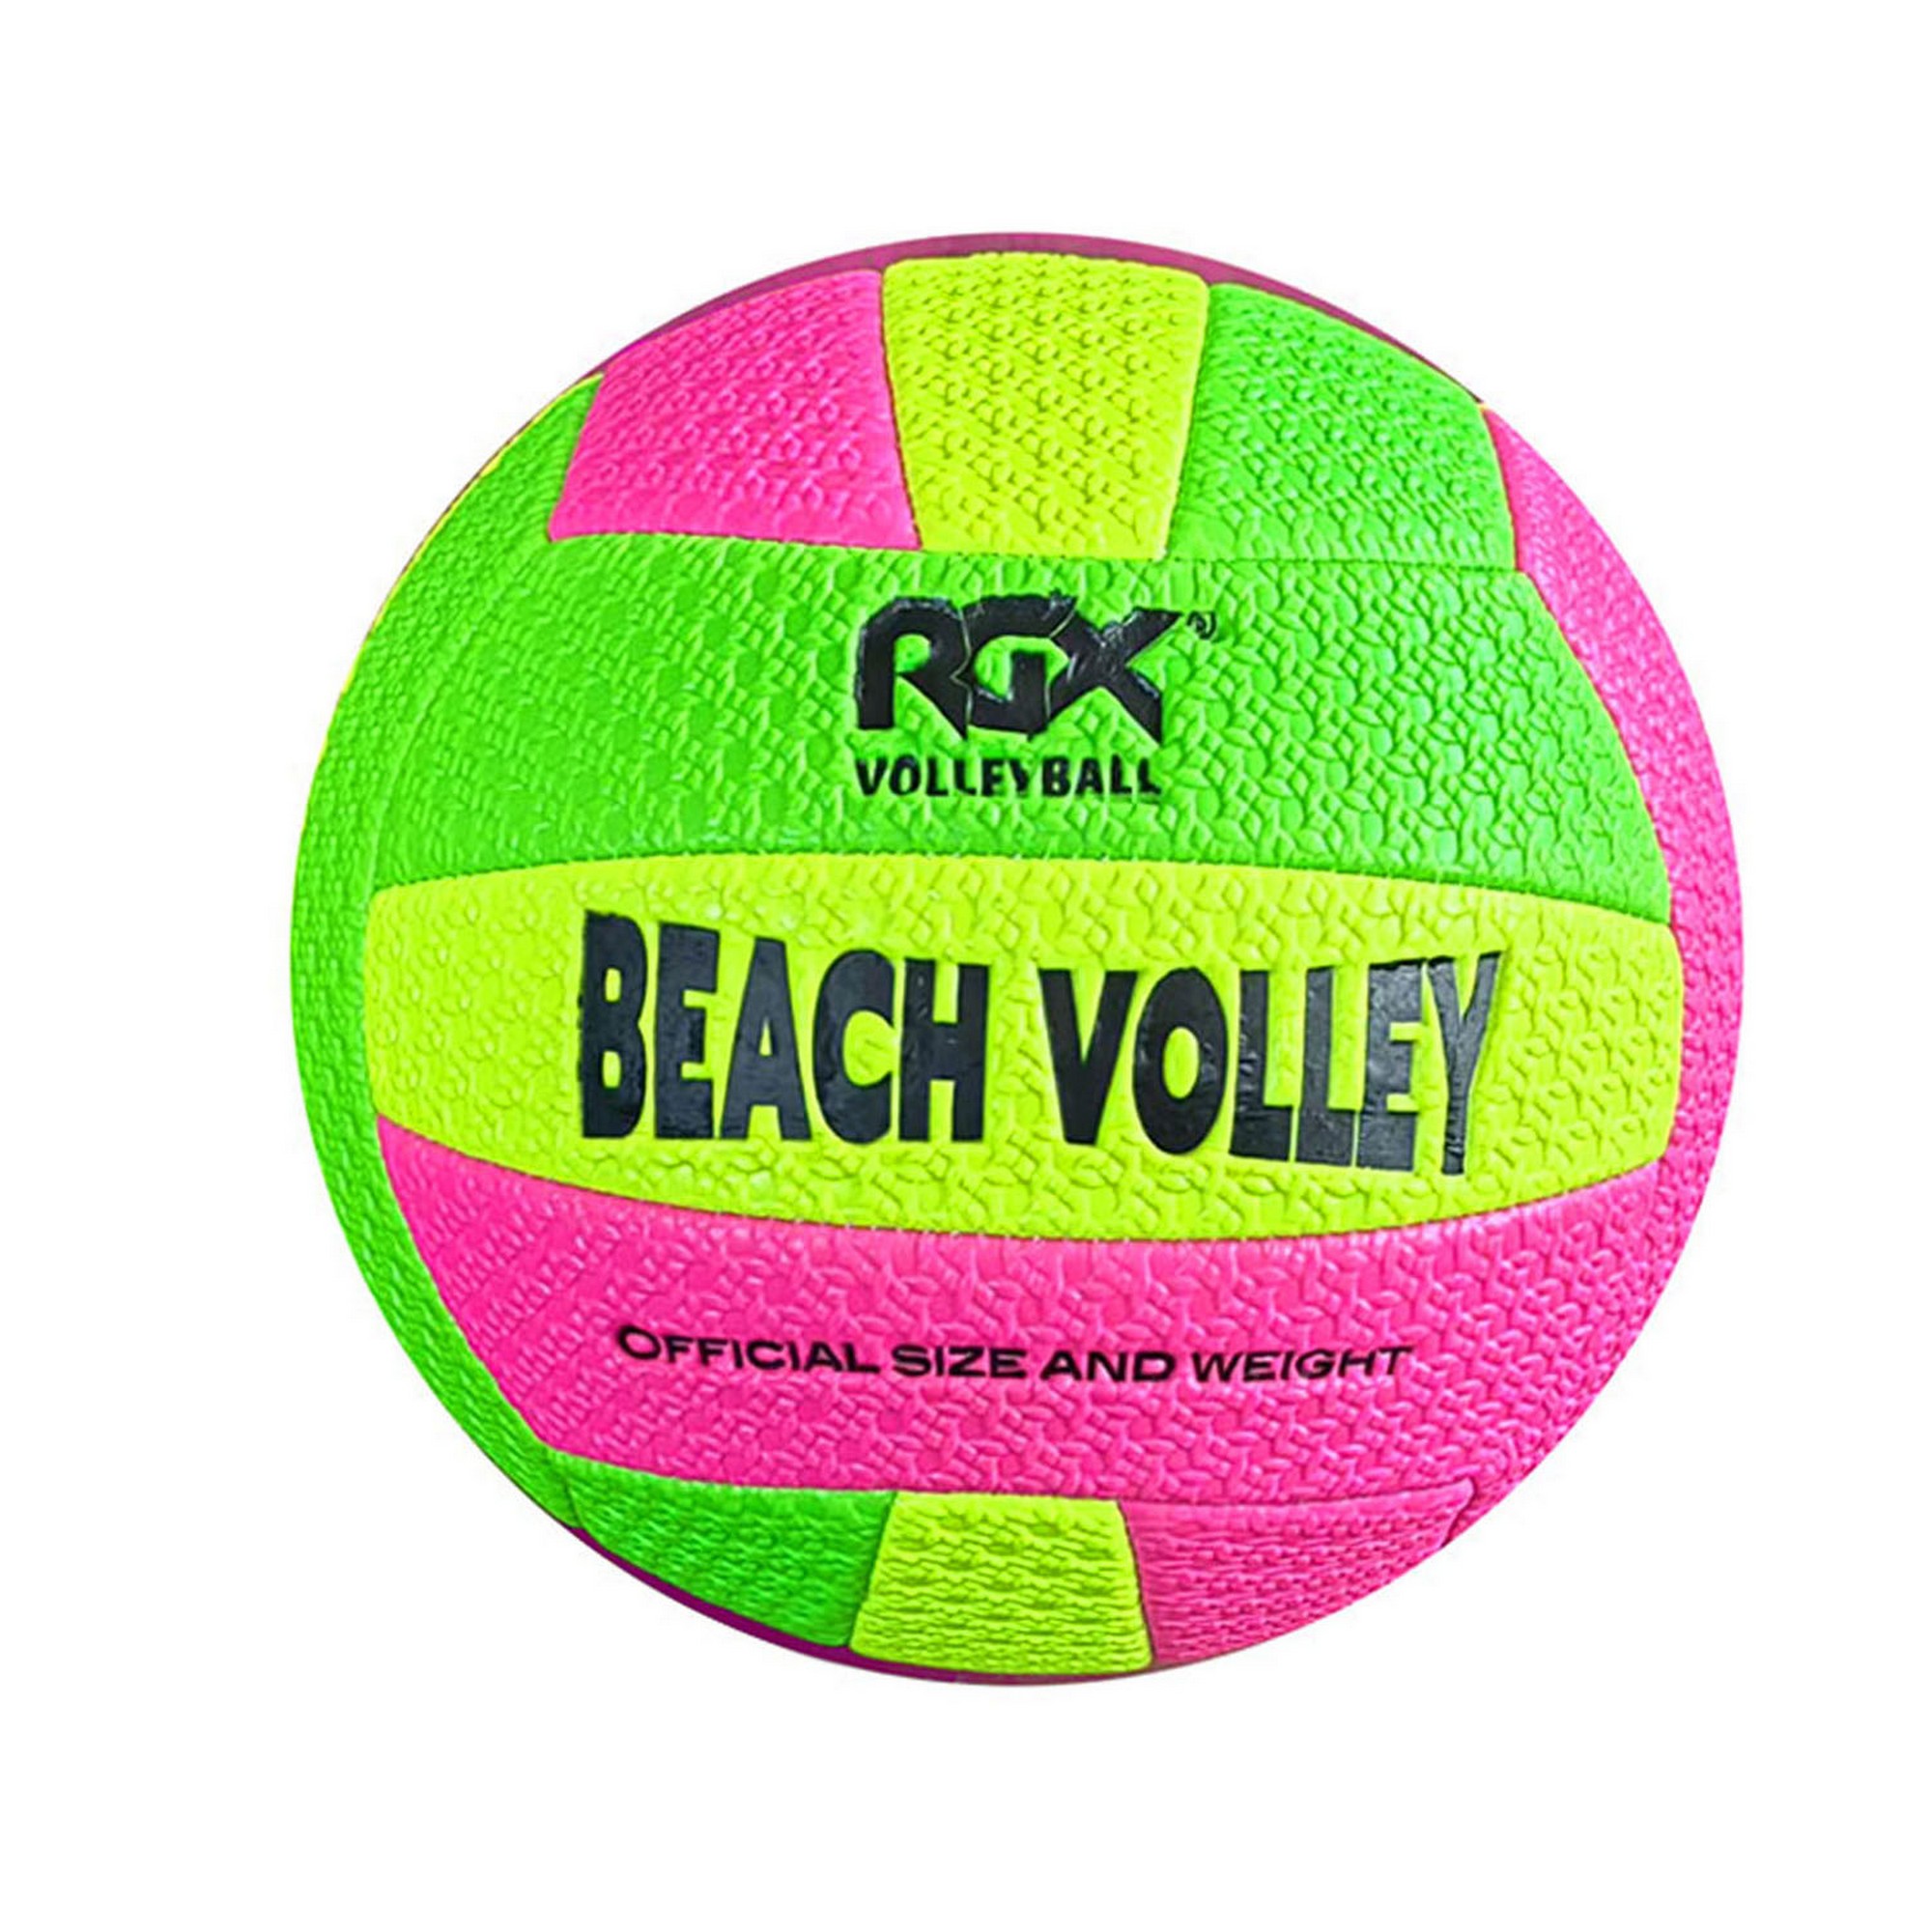 Мяч волейбольный RGX RGX-VB-13 р.5 2000_2000